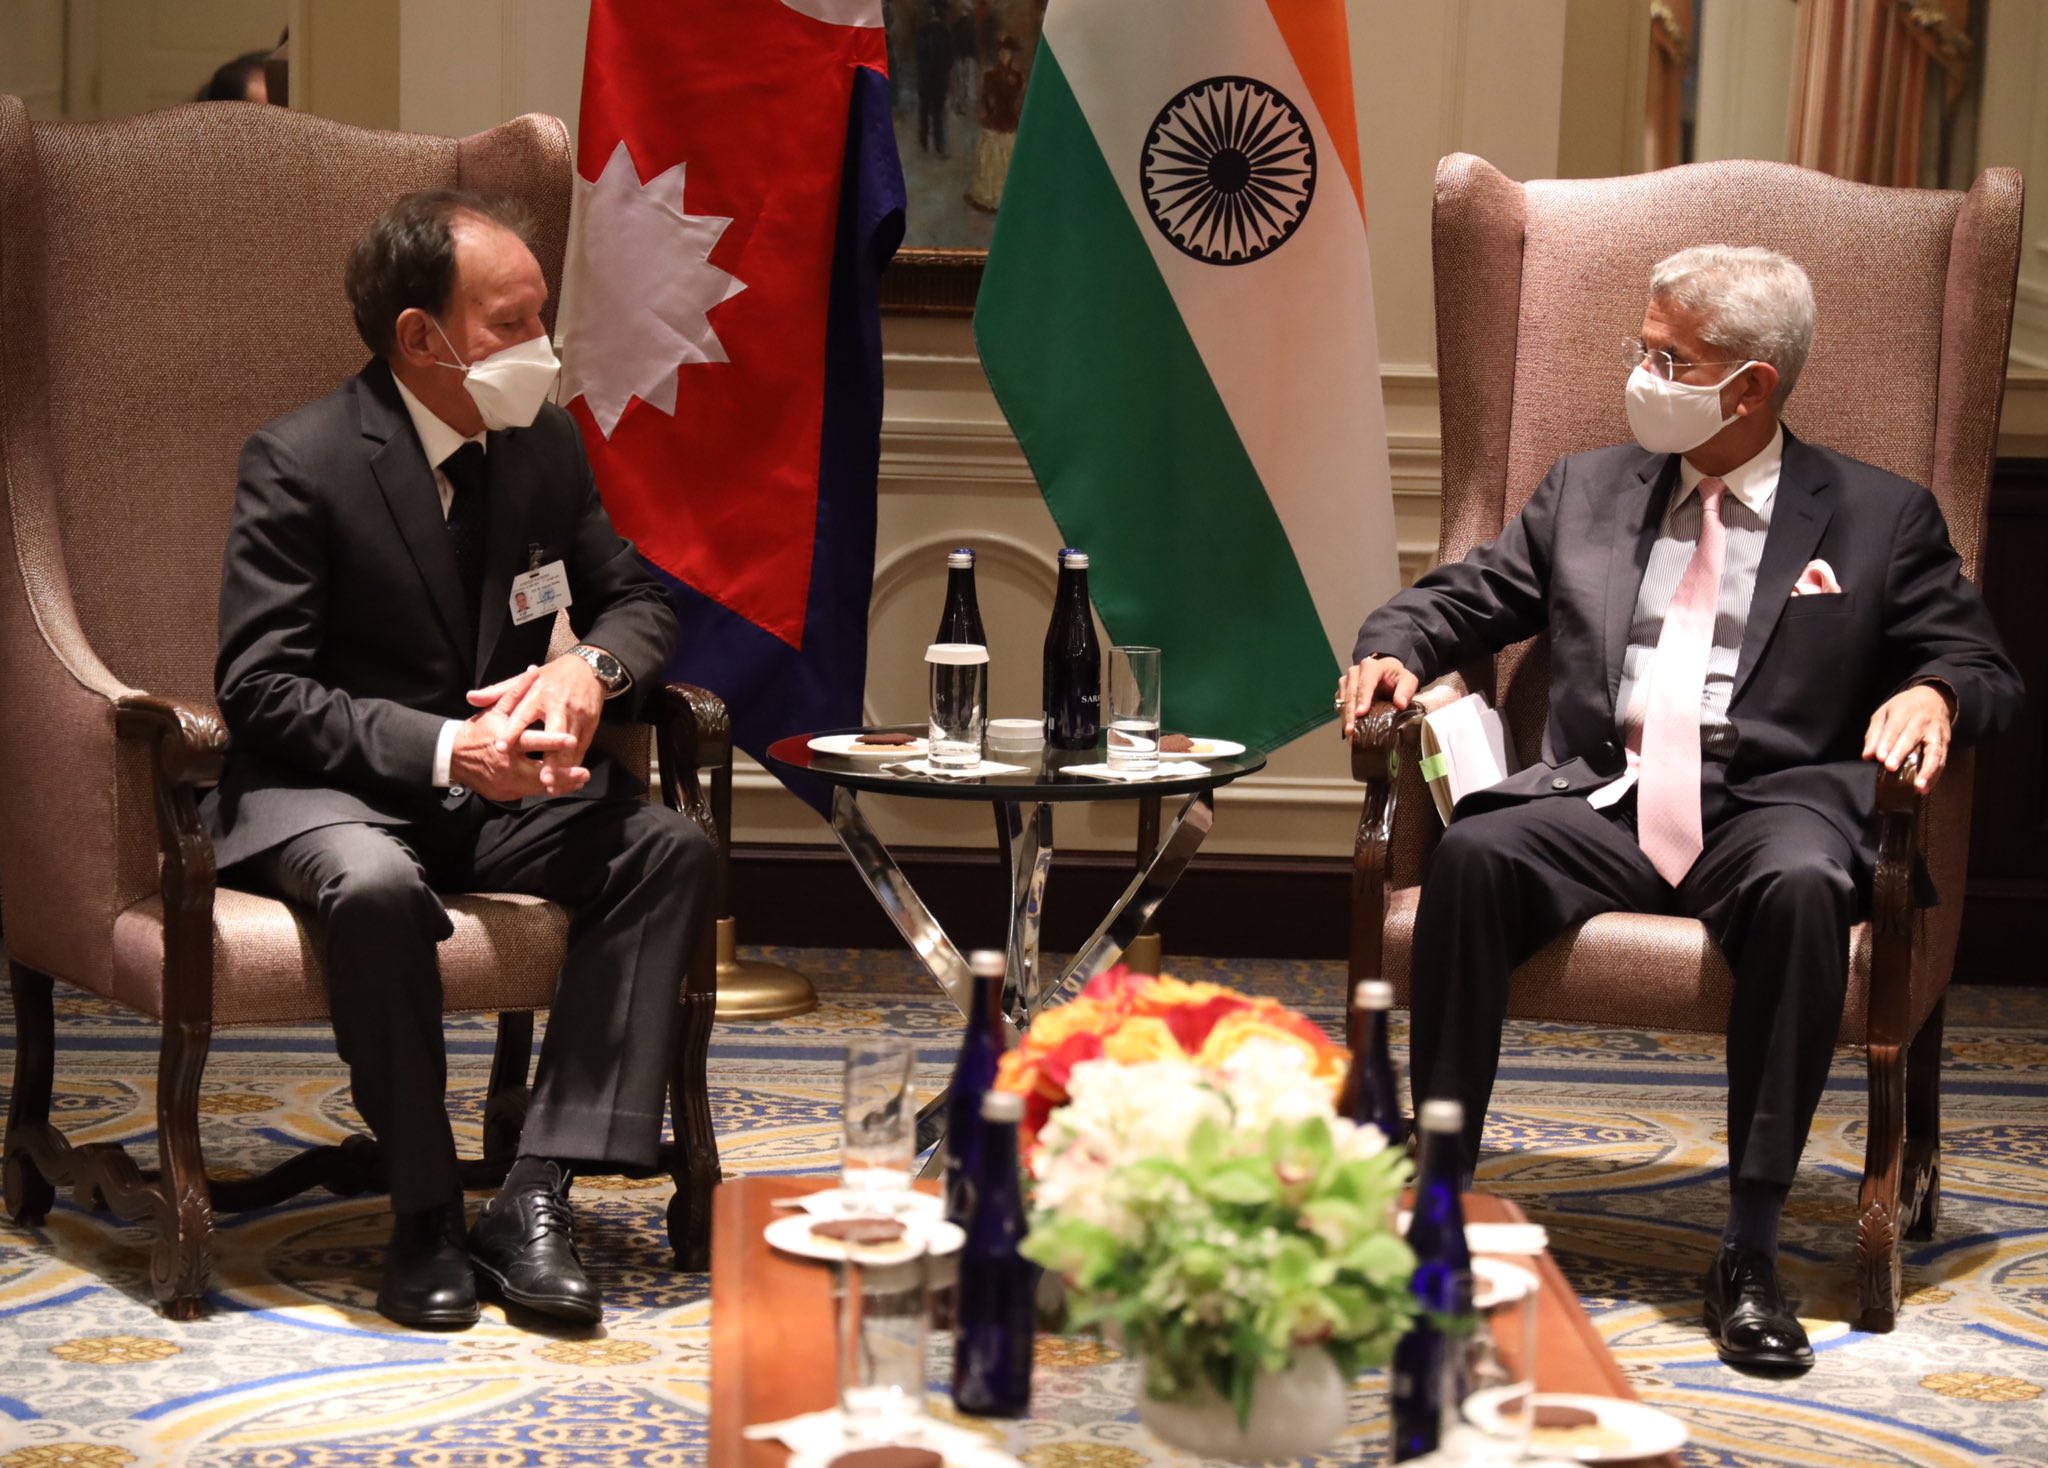 Foreign Minister Dr Khadka-Indian External Affairs Minister meet